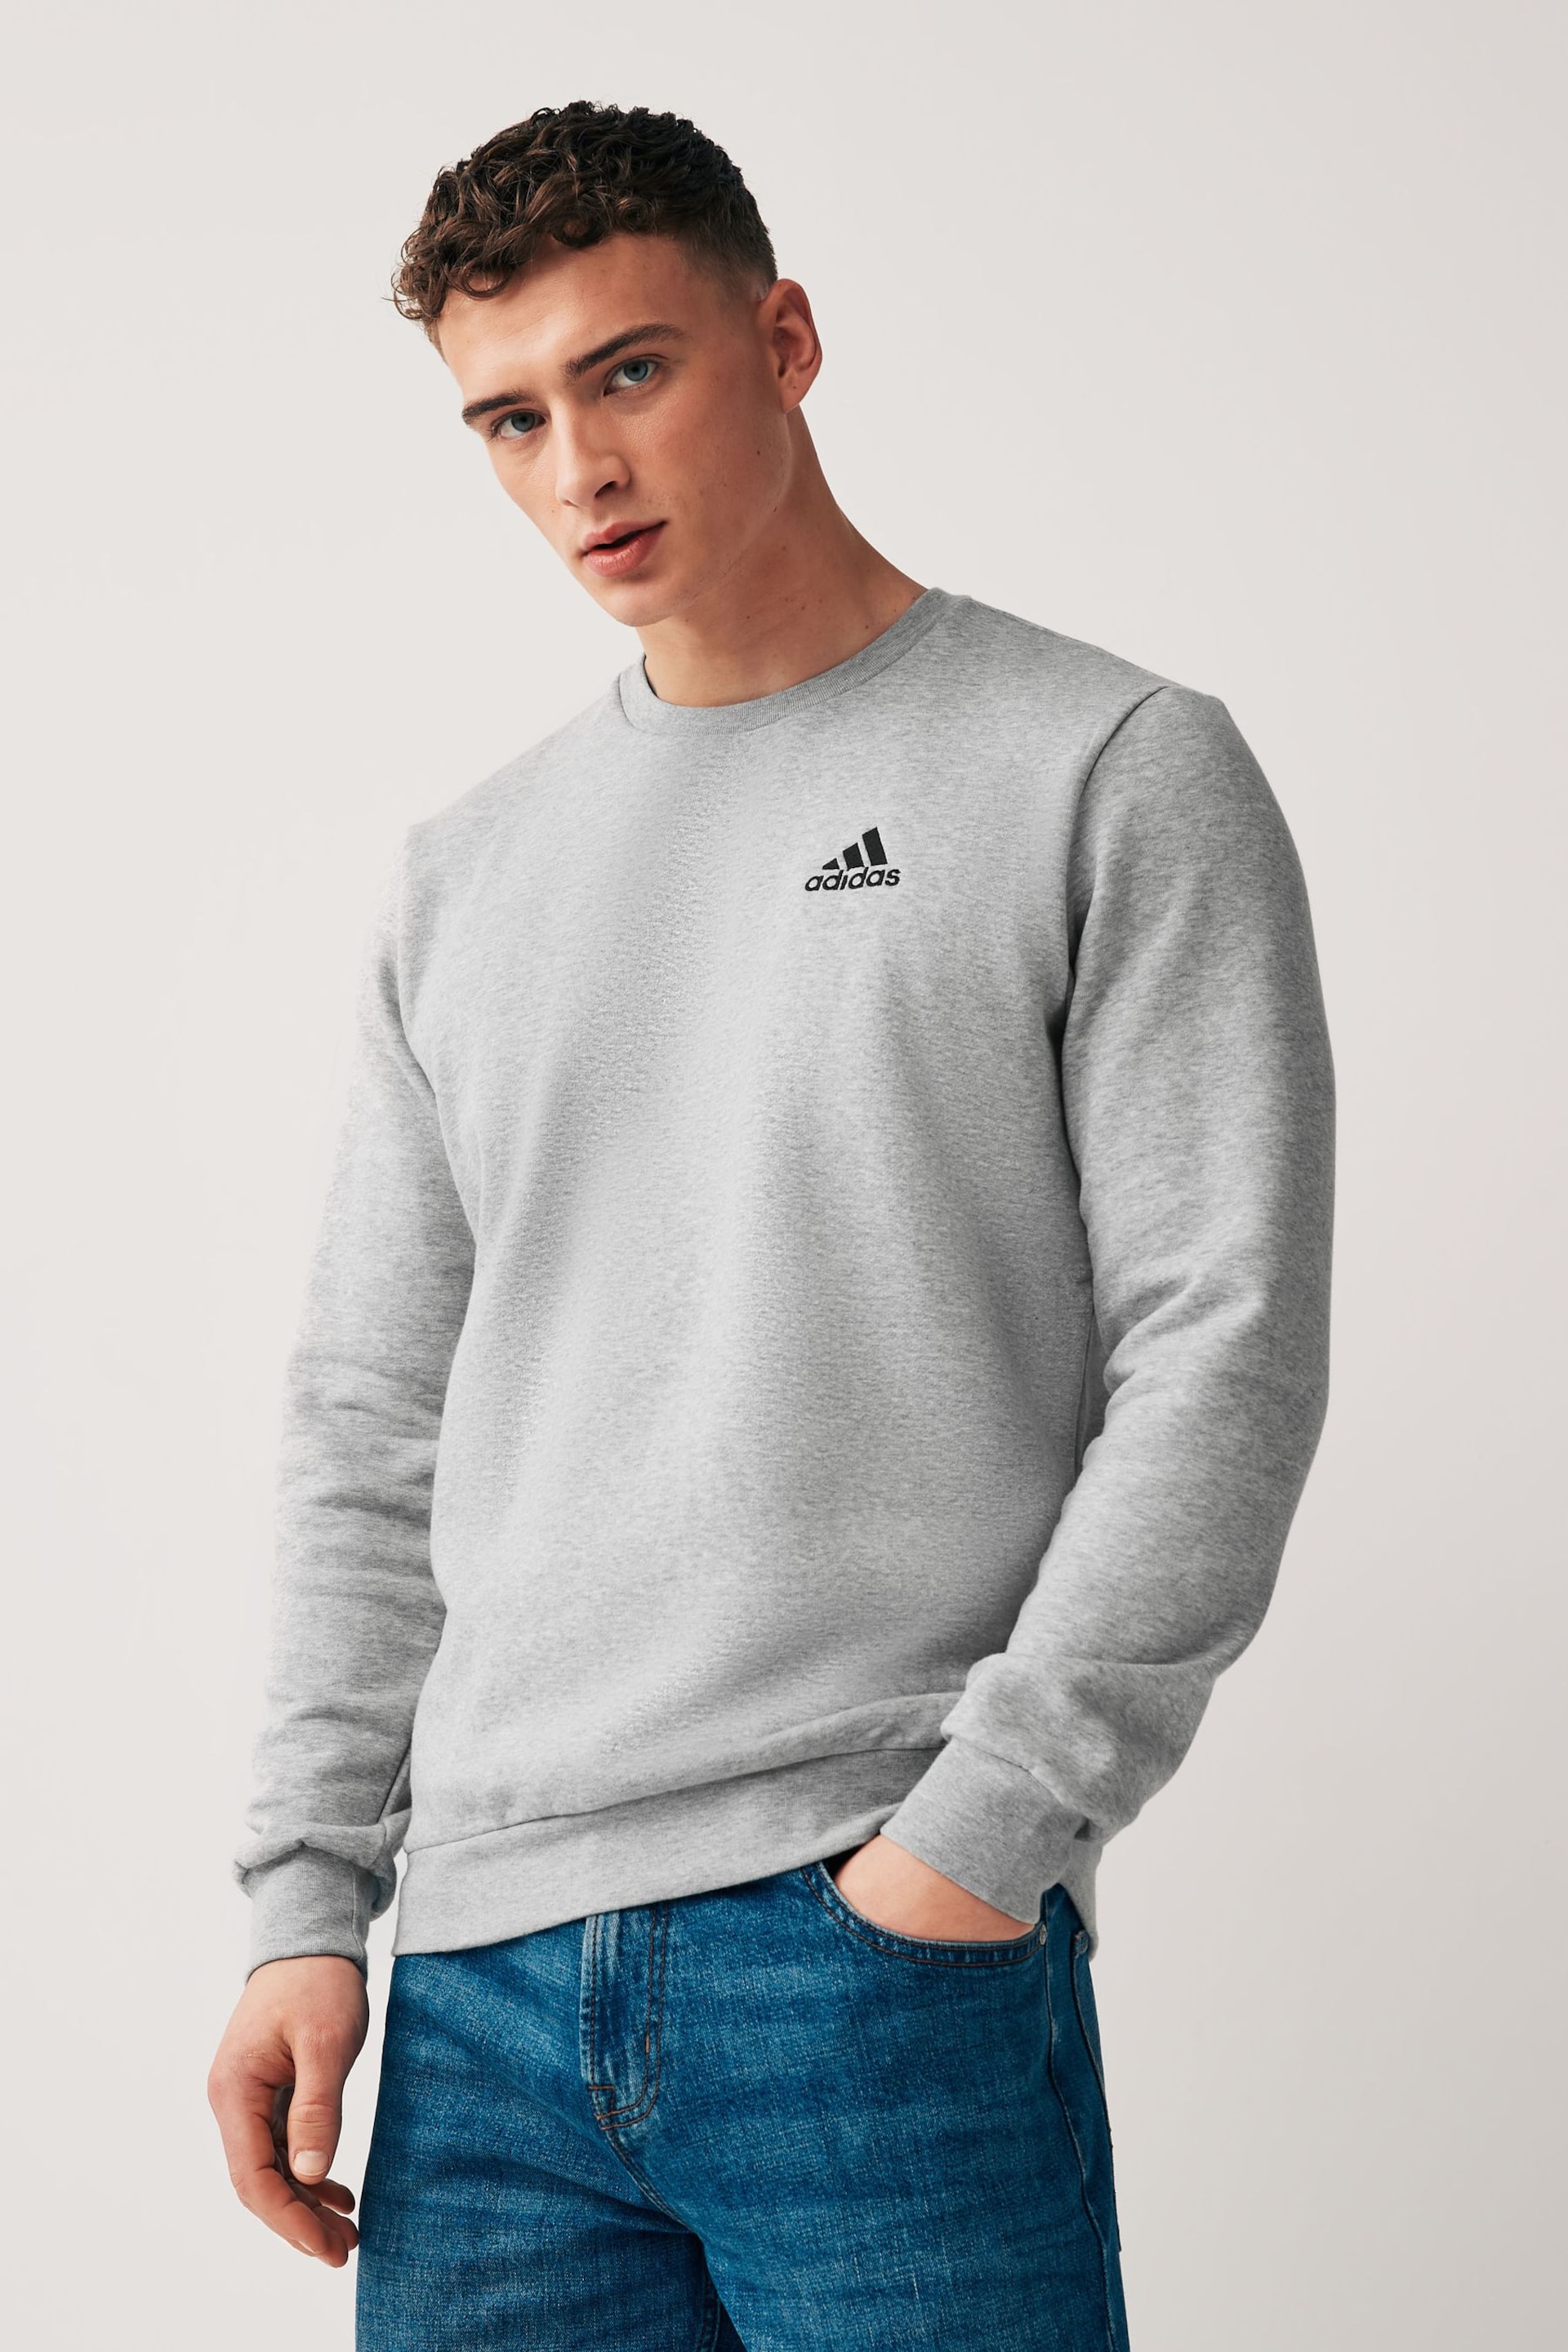 adidas Grey Feelcozy Sweatshirt - Image 1 of 5